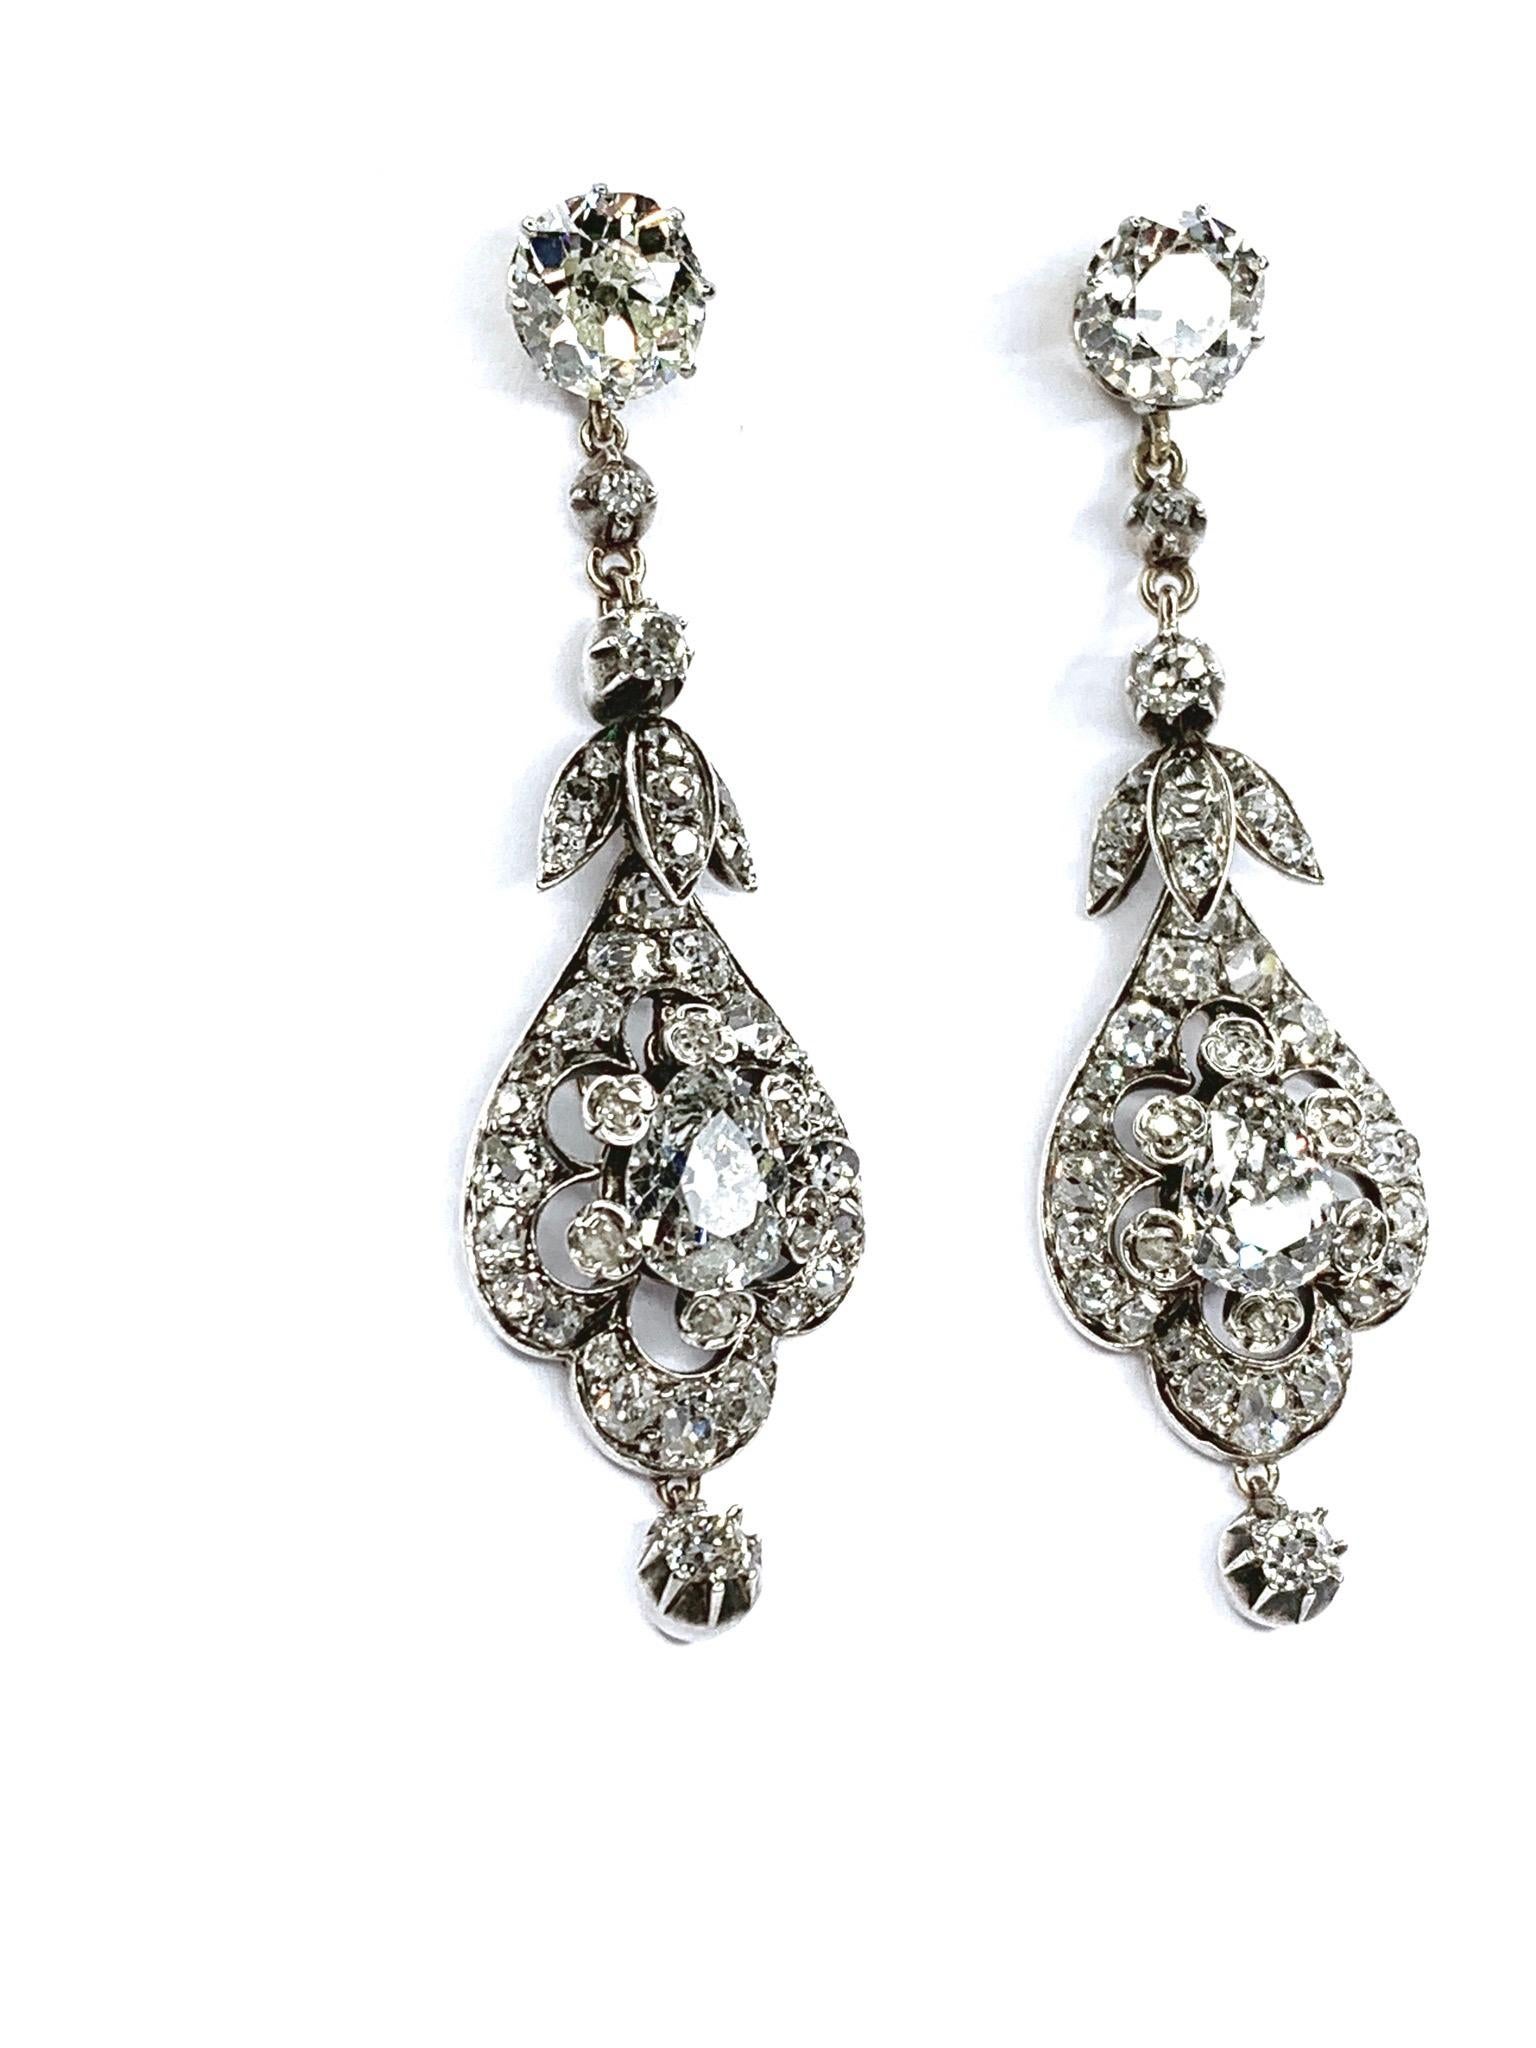 GEMOLITHOS Antikes Paar Diamant-Ohrringe, kissenförmige Diamanten geschätztes Gewicht 1,70 & 1,80 Karat, geschätzte Farbe  I-J & Klarheit VS2. Birnenförmige Diamanten geschätztes Gewicht 1,25 & 1,38 Karat, geschätzte Farbe I-J & Klarheit I. in